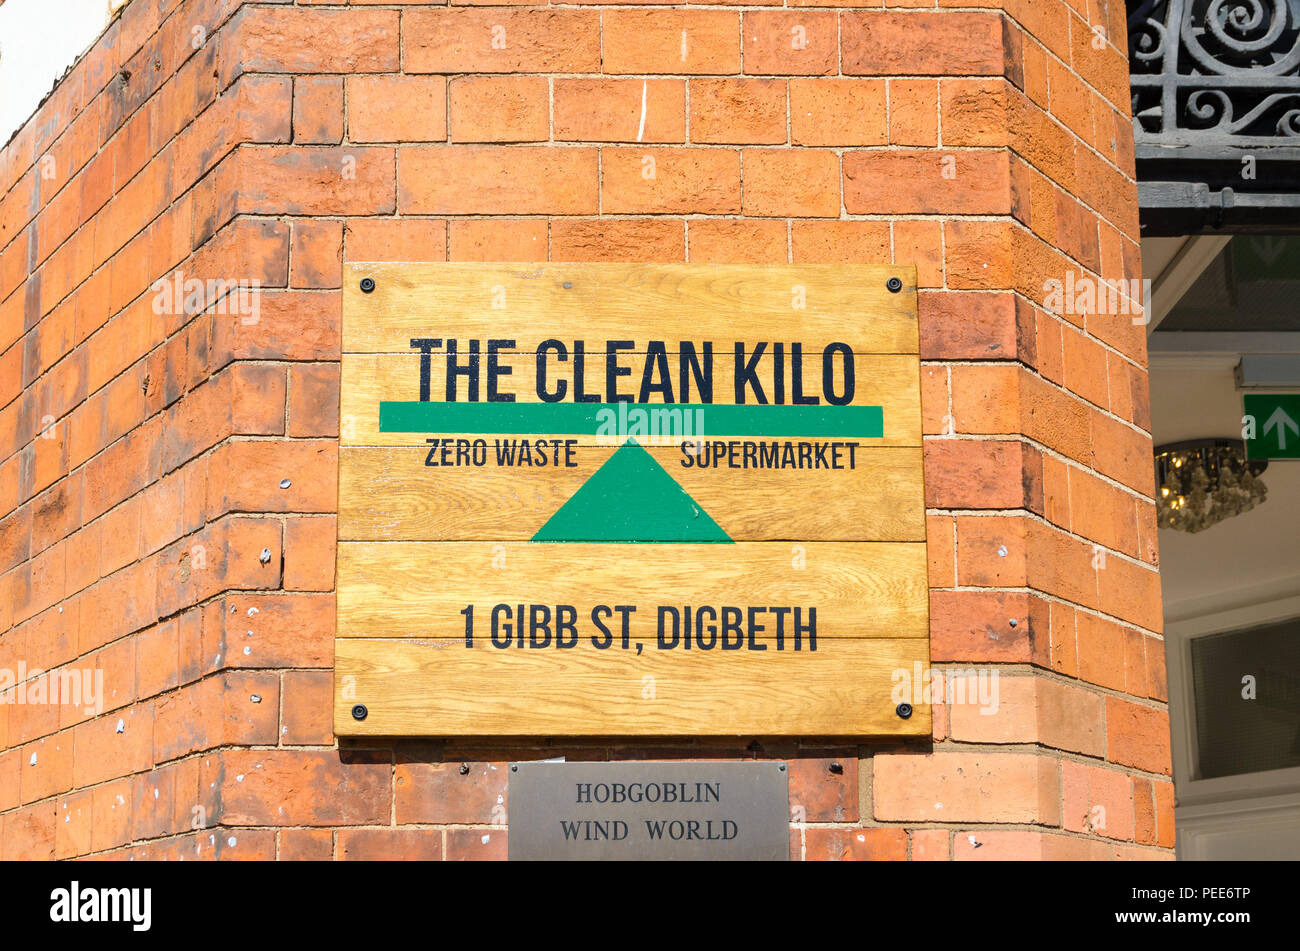 El Kilo limpio cero residuos supermercado y tienda de alimentos en Gibb Street, Digbeth, Birmingham Foto de stock